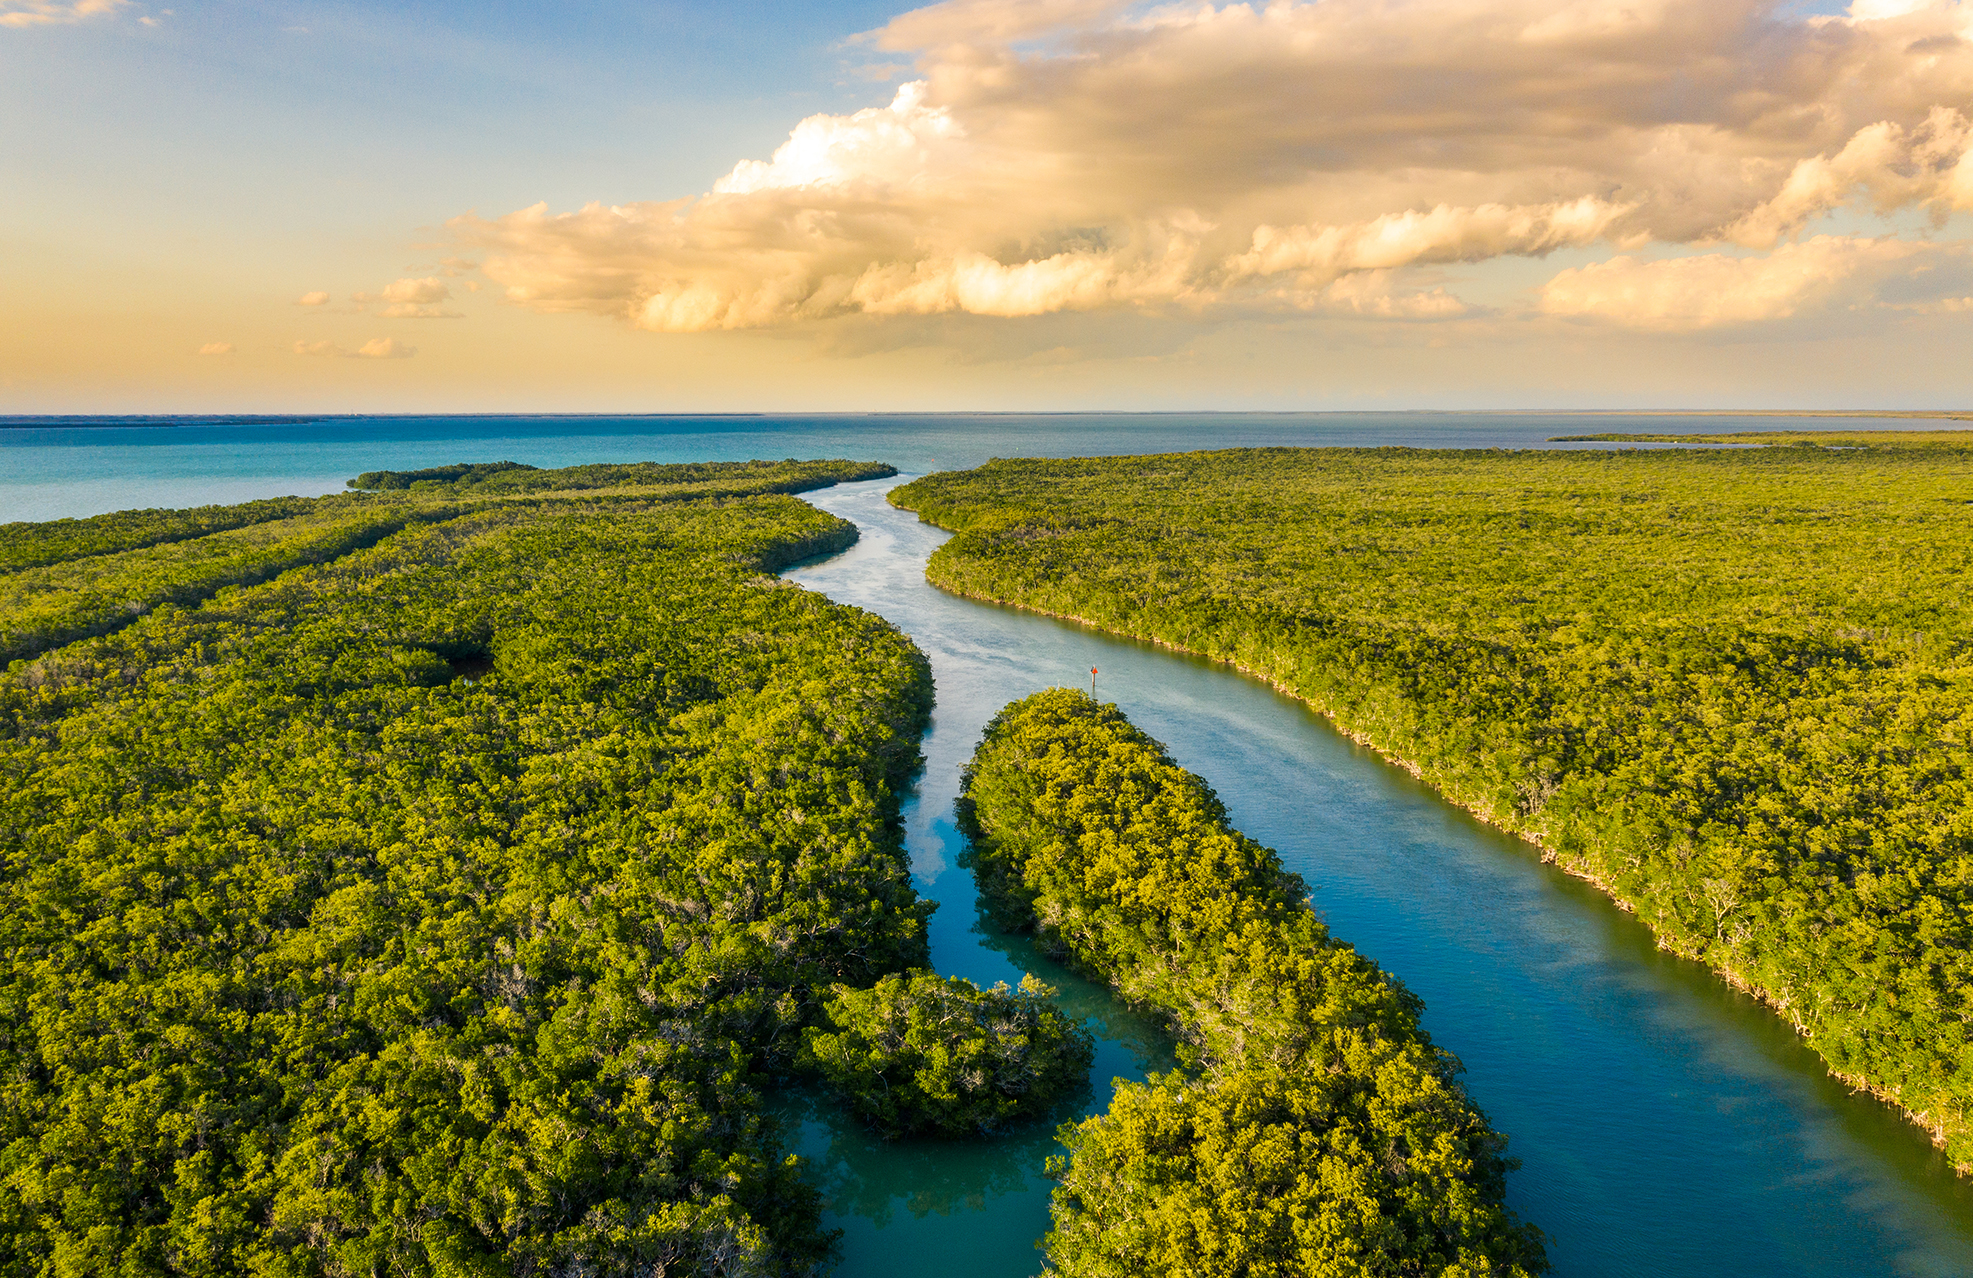 Visit the Florida Everglades